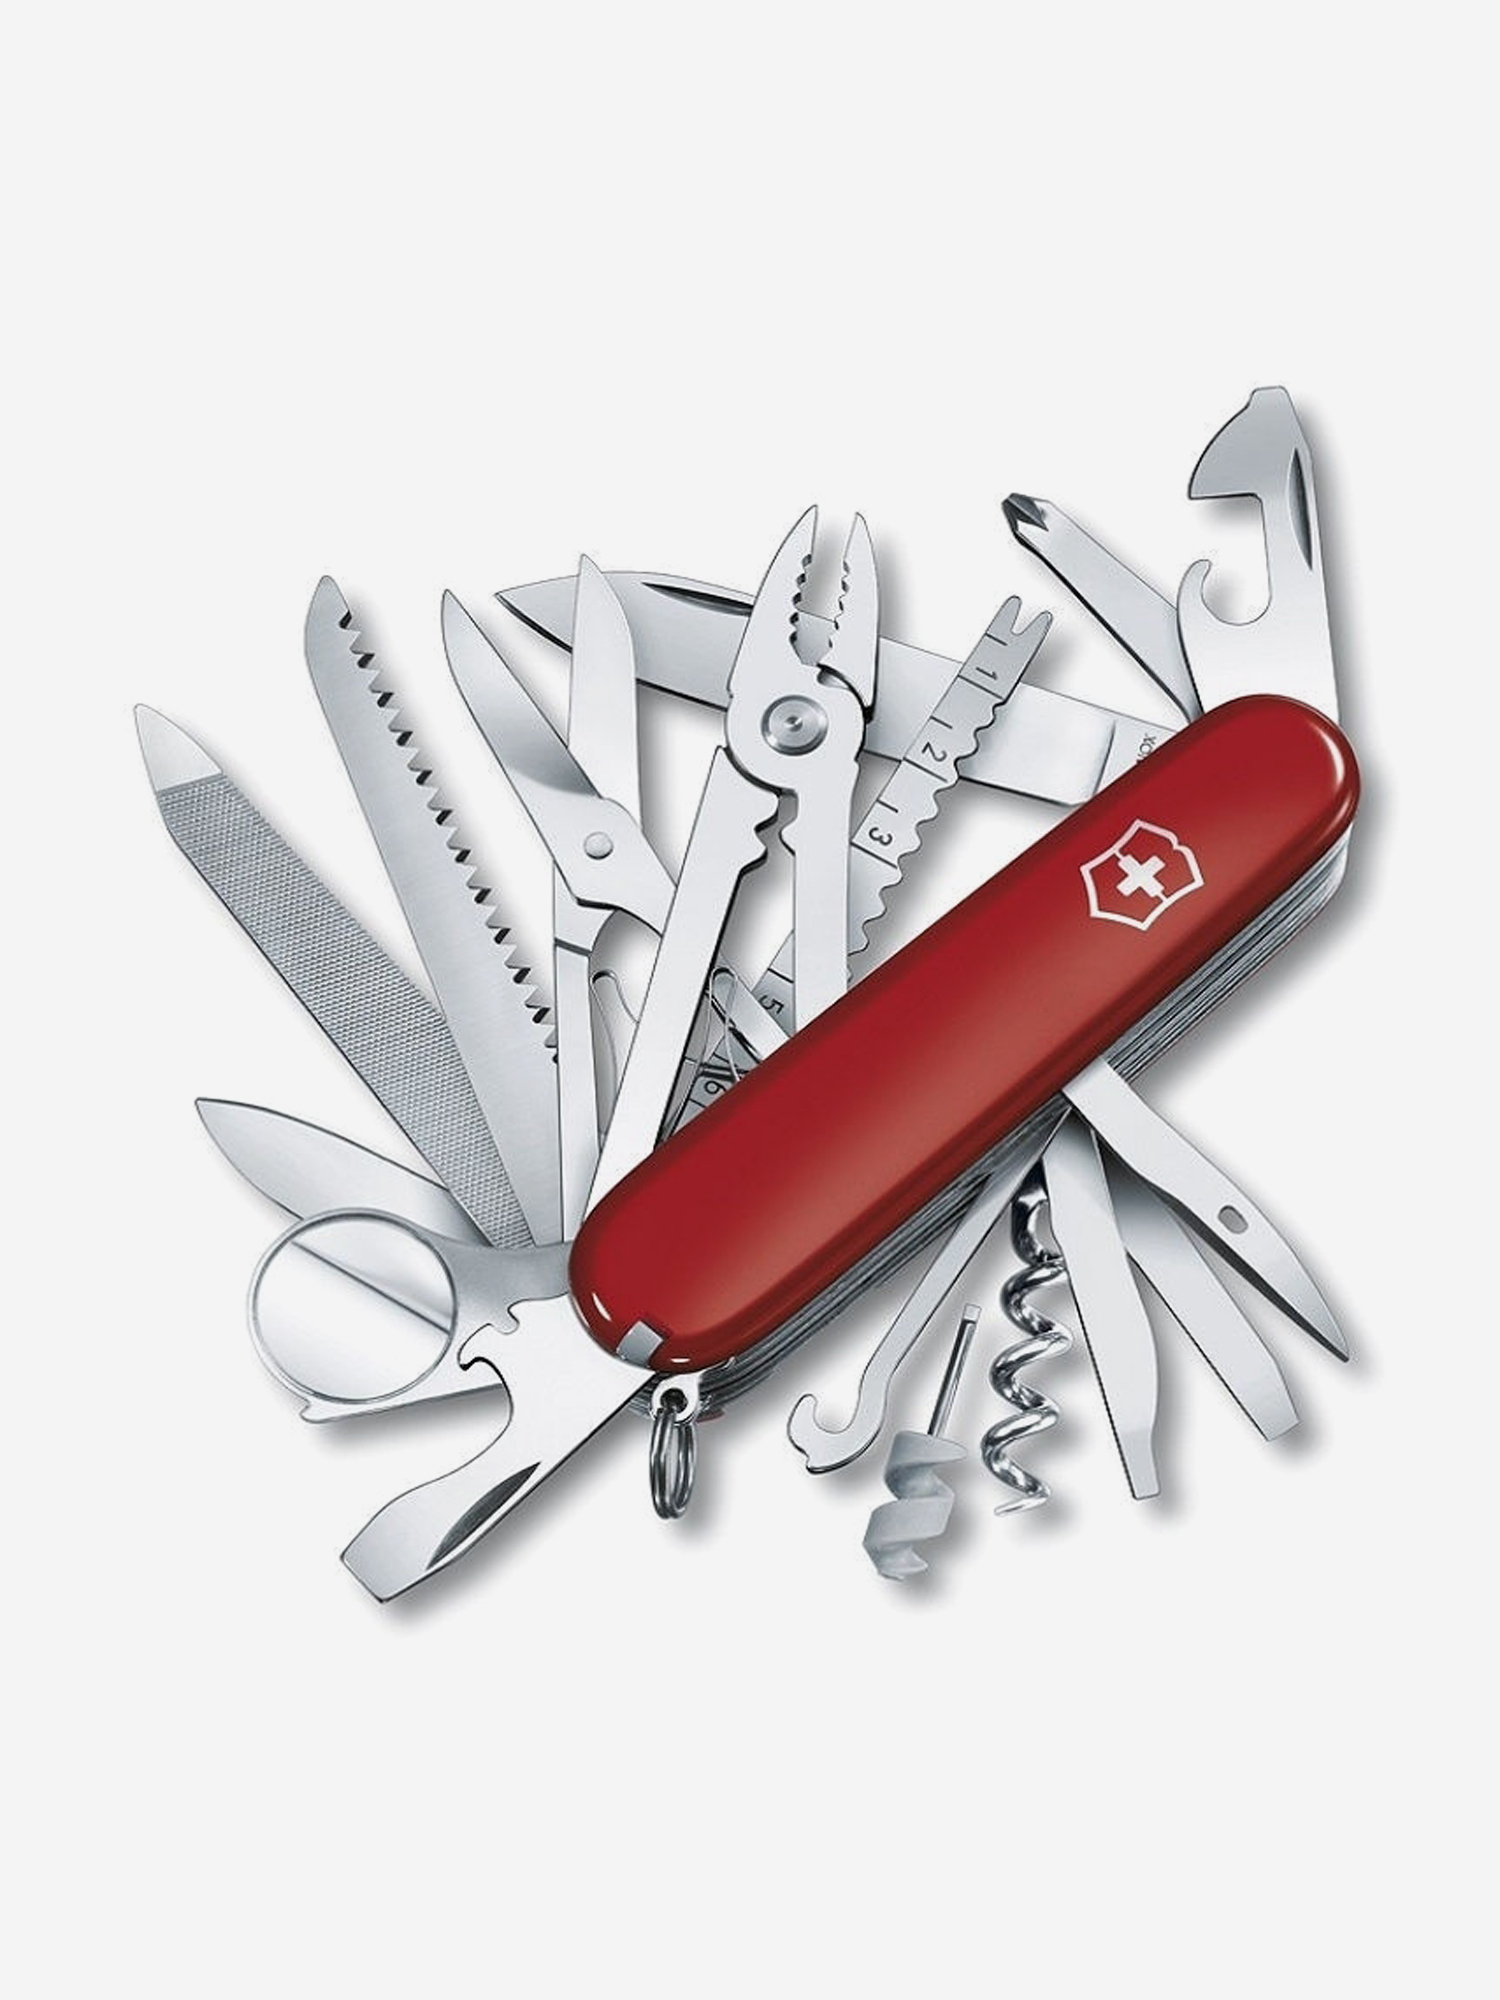 Нож складной Victorinox SwissChamp, 91 мм, 33 функции, Красный нож складной victorinox swisschamp 91 мм 33 функции красный